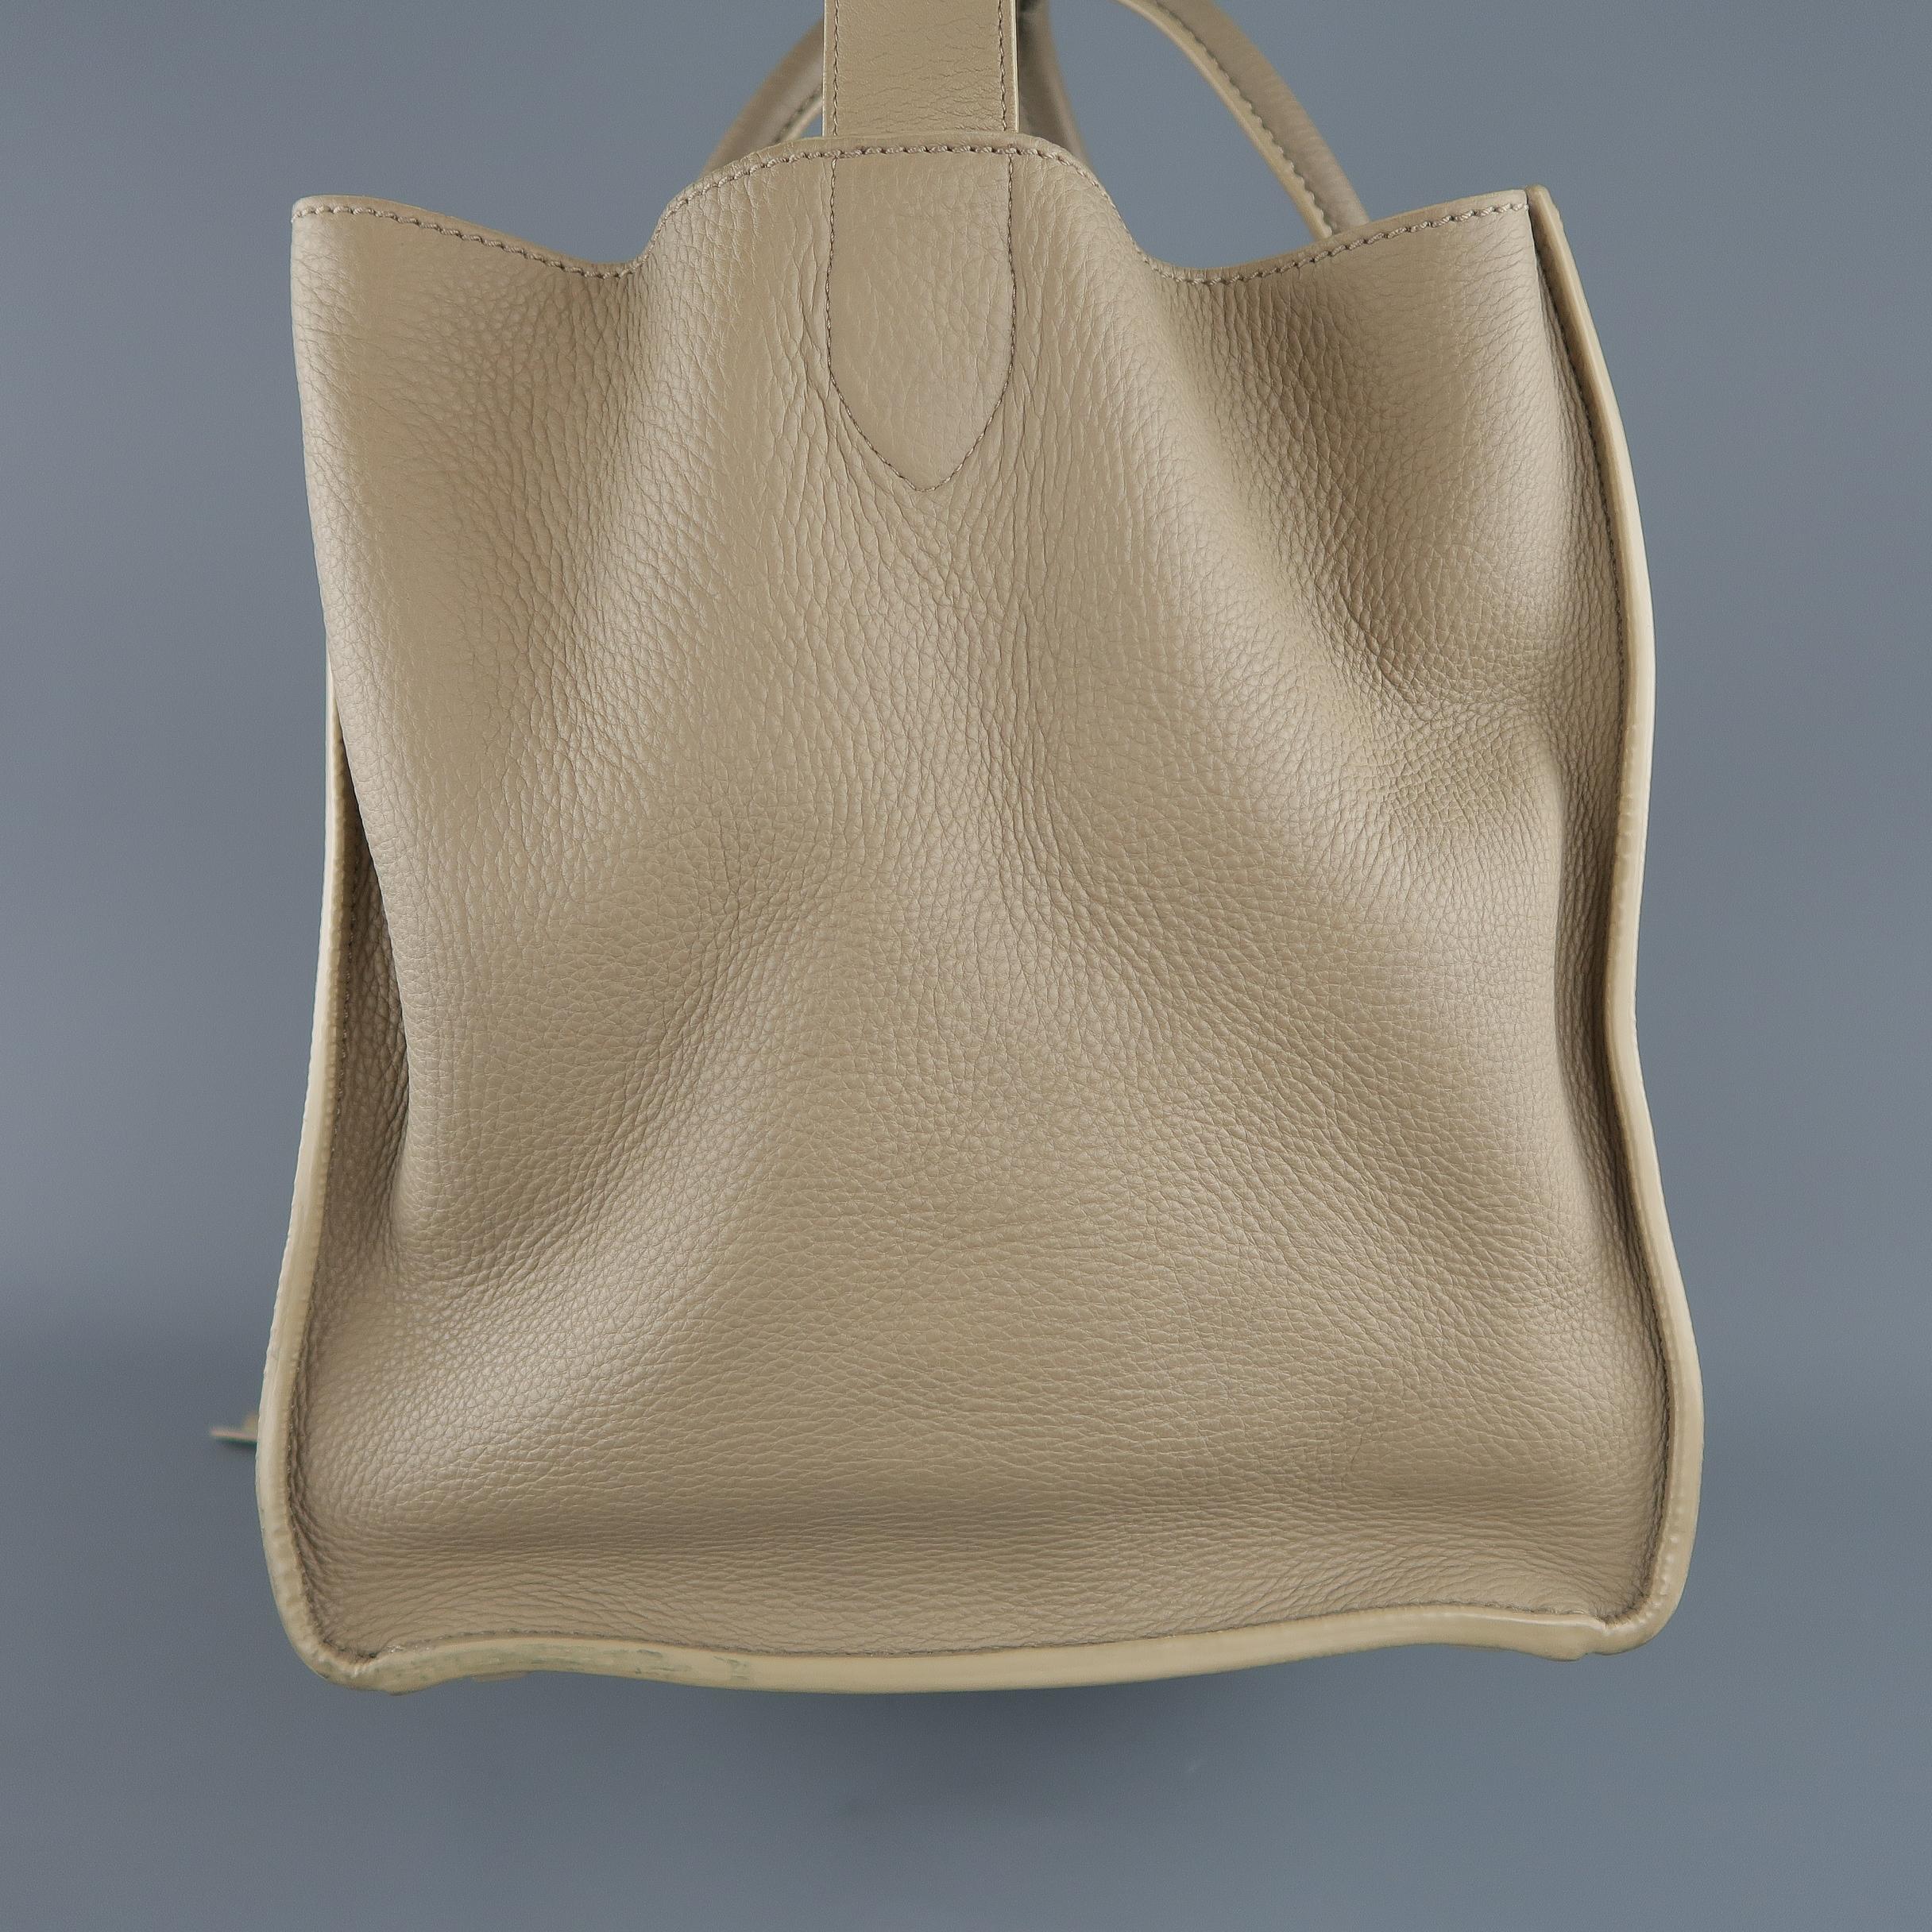 CELINE Taupe Pebble Grain Leather PHANTOM Medium Tote Handbag  7